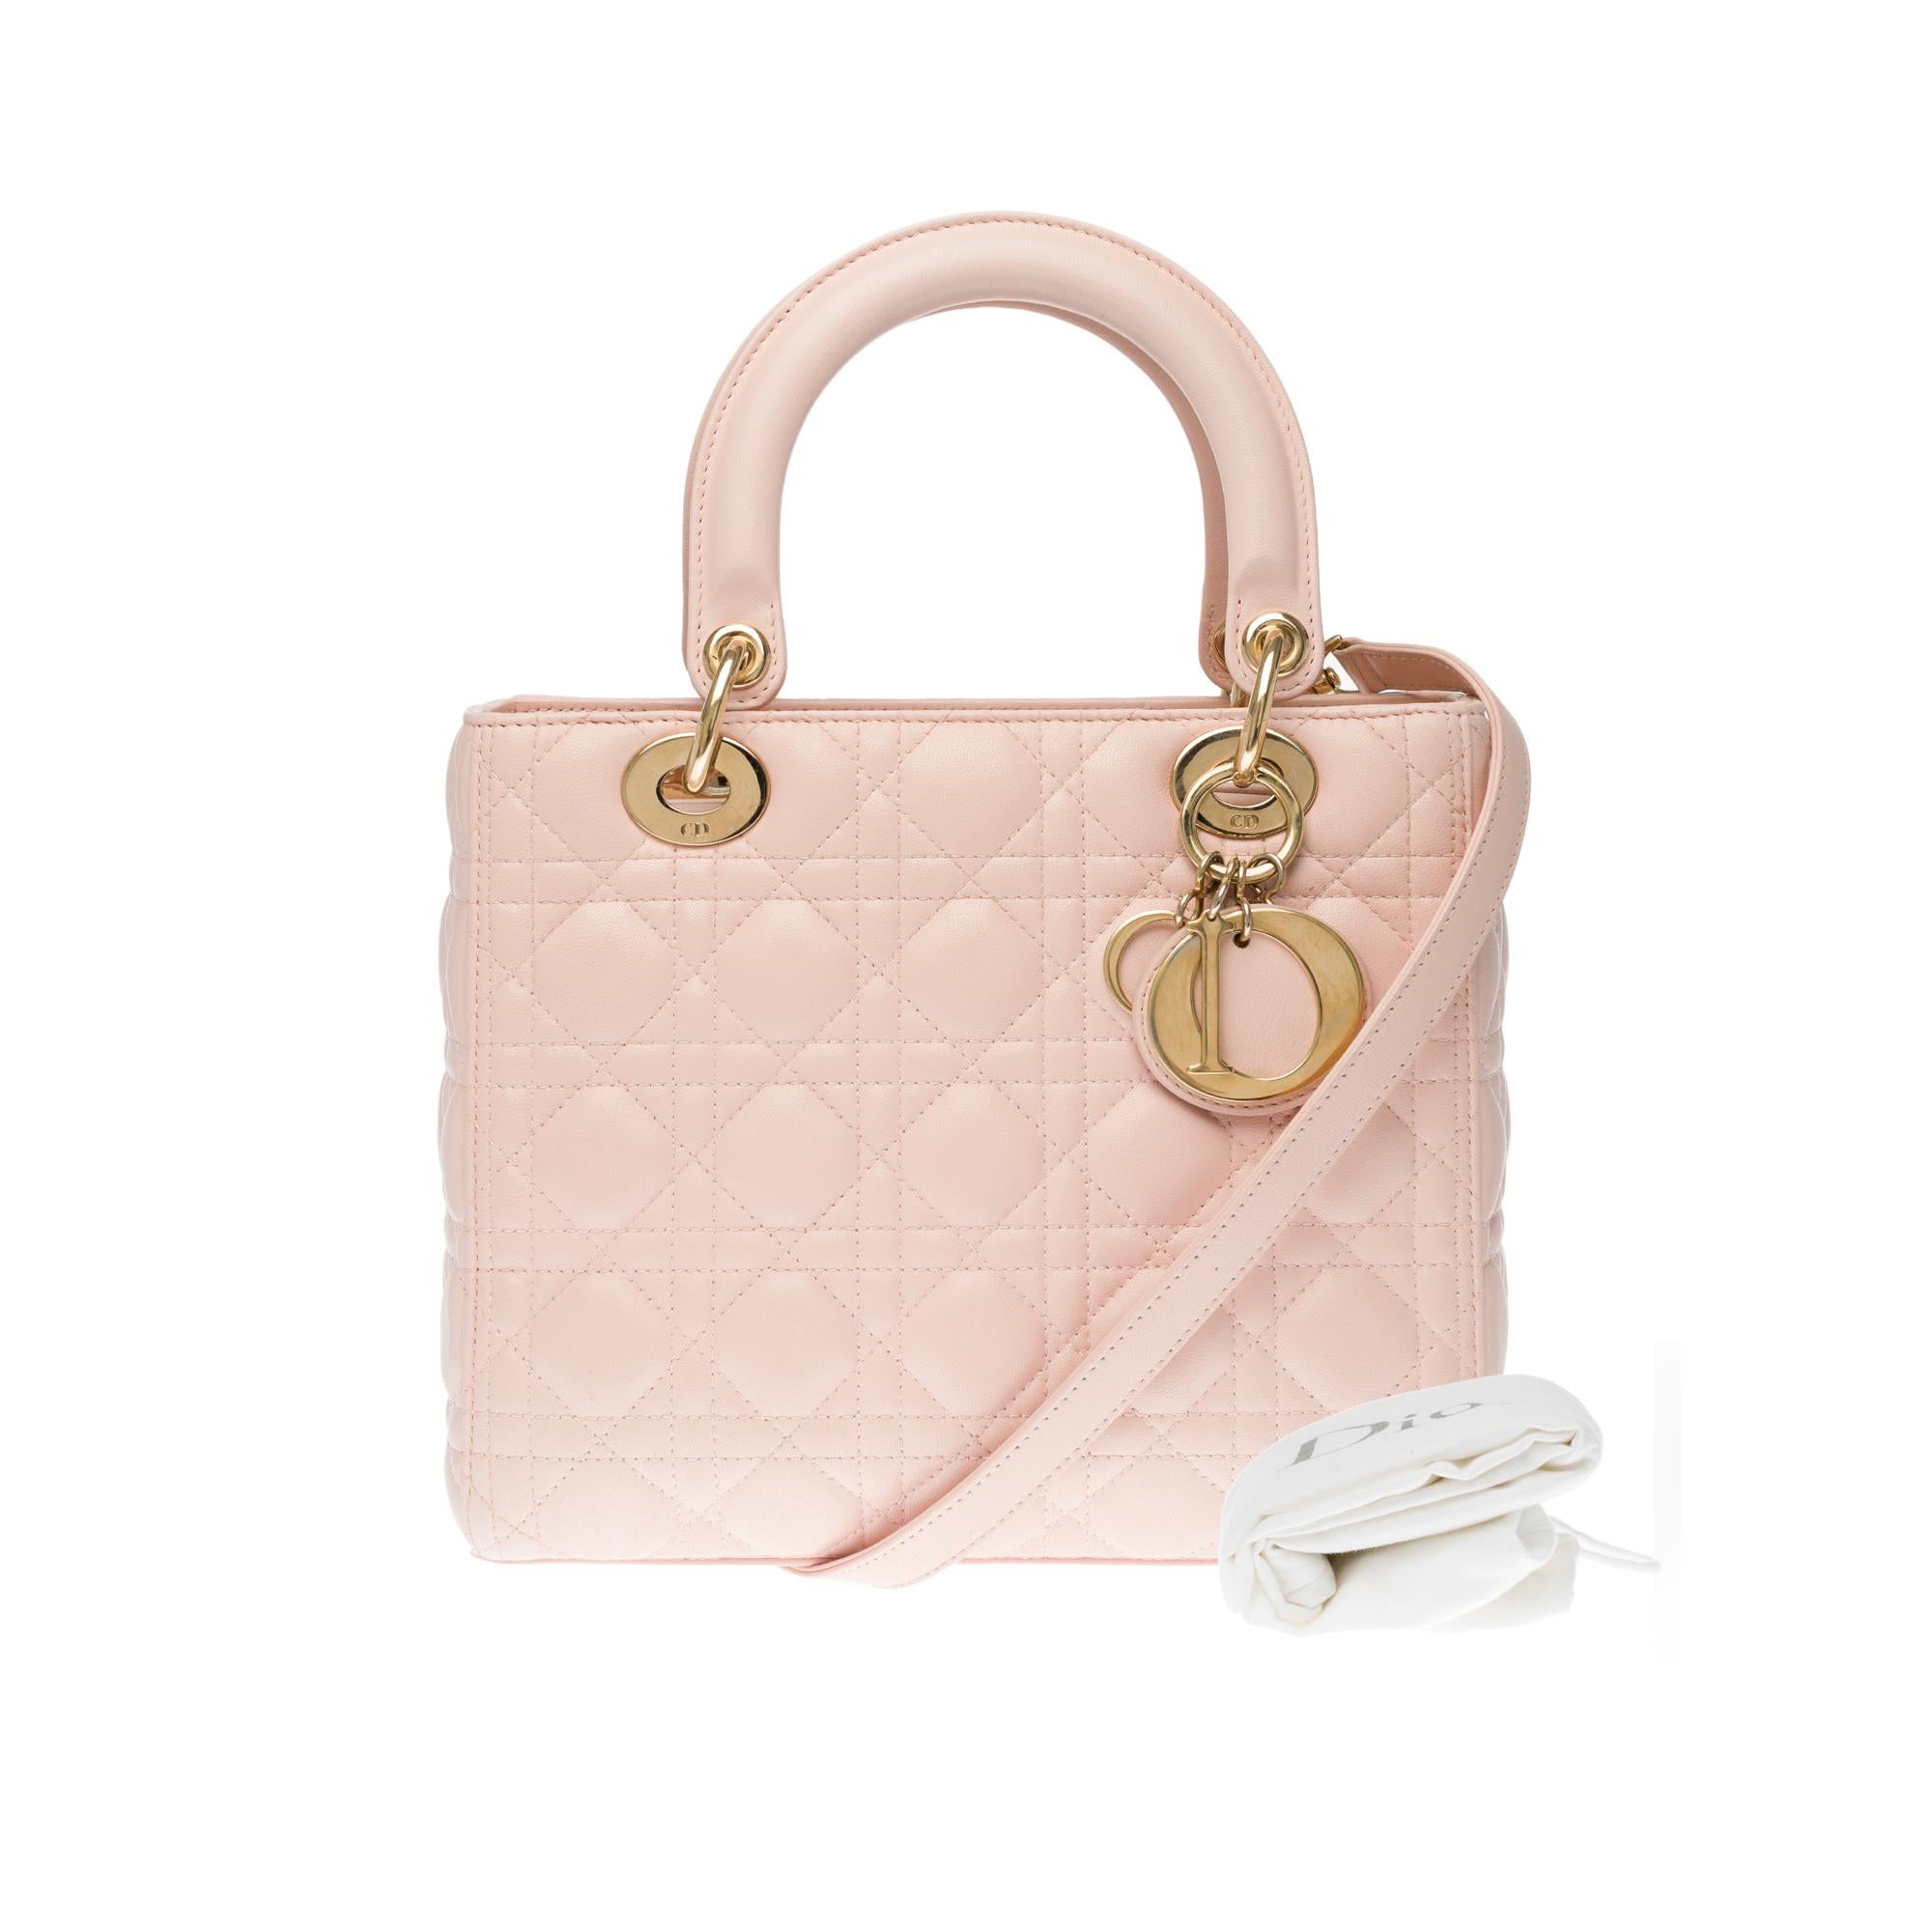  Christian Dior Lady Dior Medium size handbag in Pink cannage leather, GHW 3